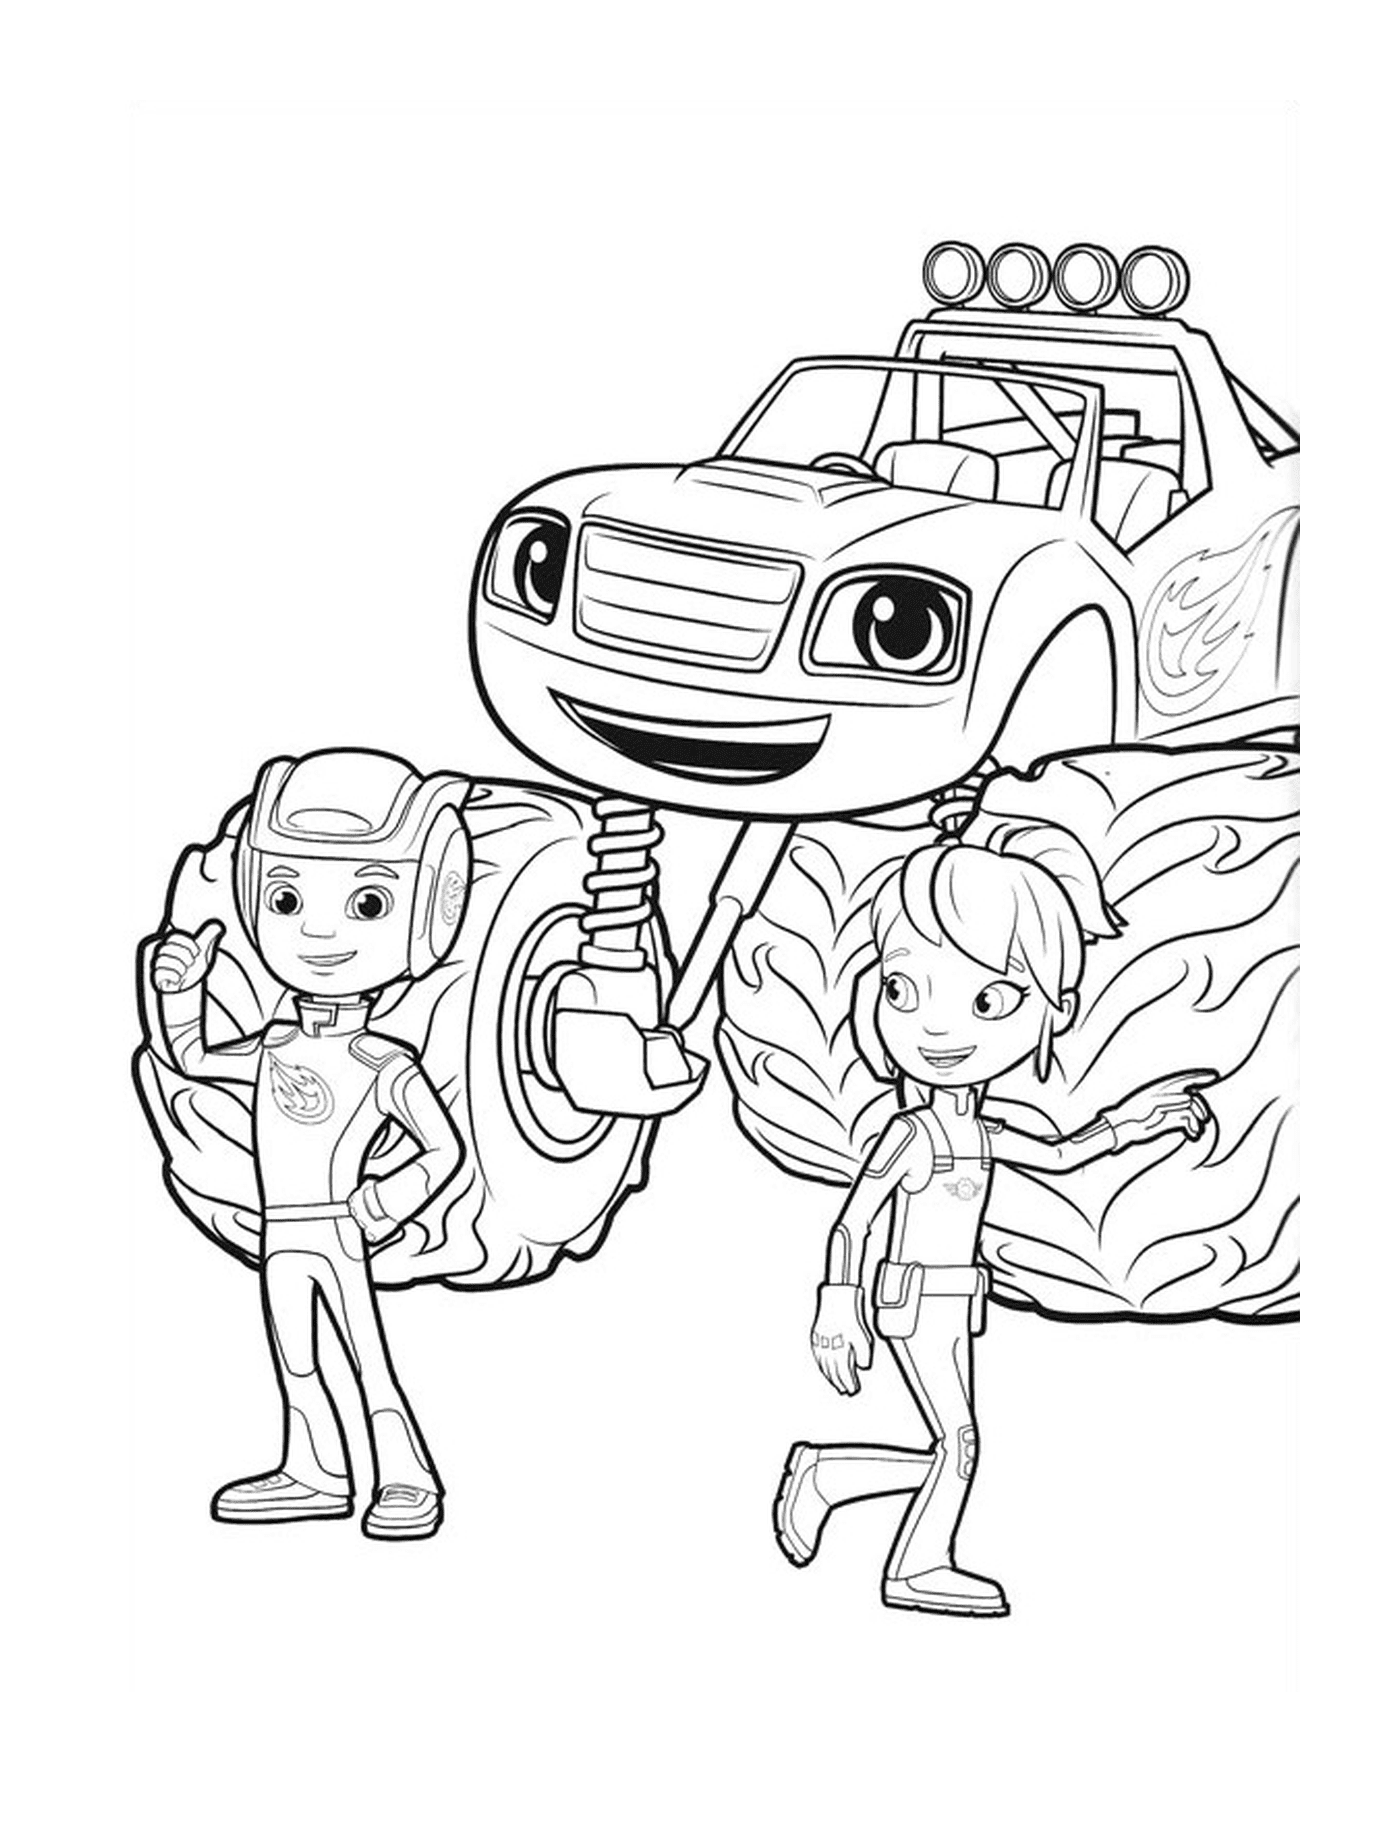  एक लड़का और एक लड़की ट्रक के बगल में खड़े हैं 